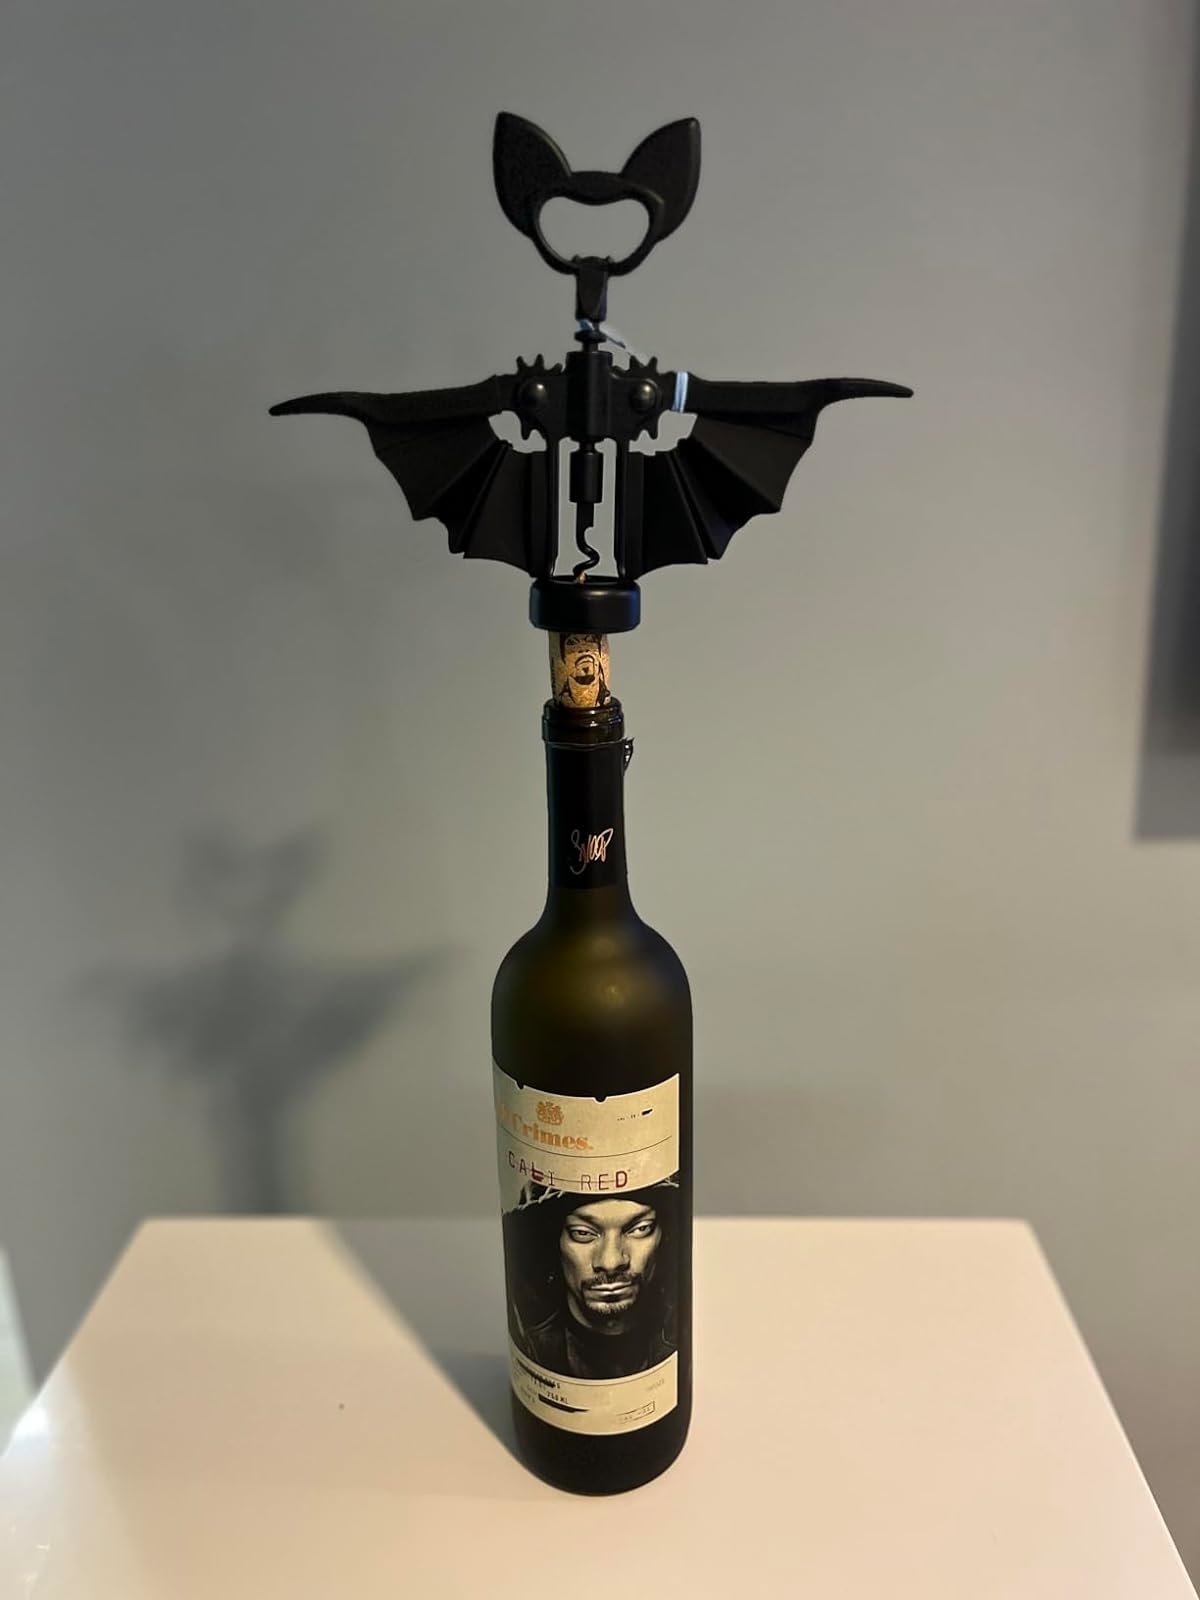 A bat-shaped wine opener on a wine bottle